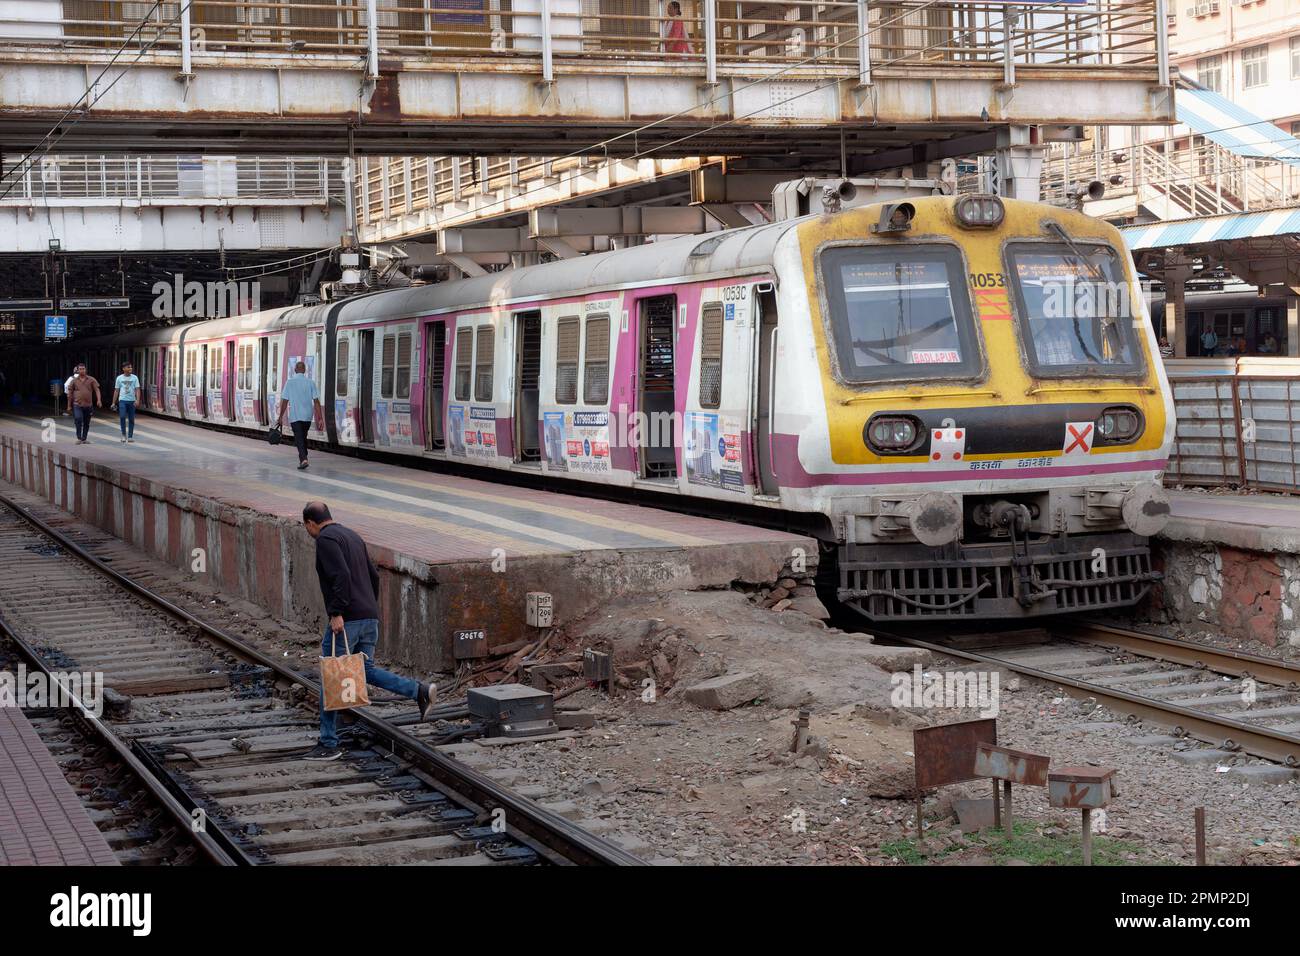 Un train local (de banlieue) de la ligne Central Railways s'est arrêté à Chhatrapati Shivaji Maharaj Terminus (CSMT) à Mumbai, en Inde Banque D'Images